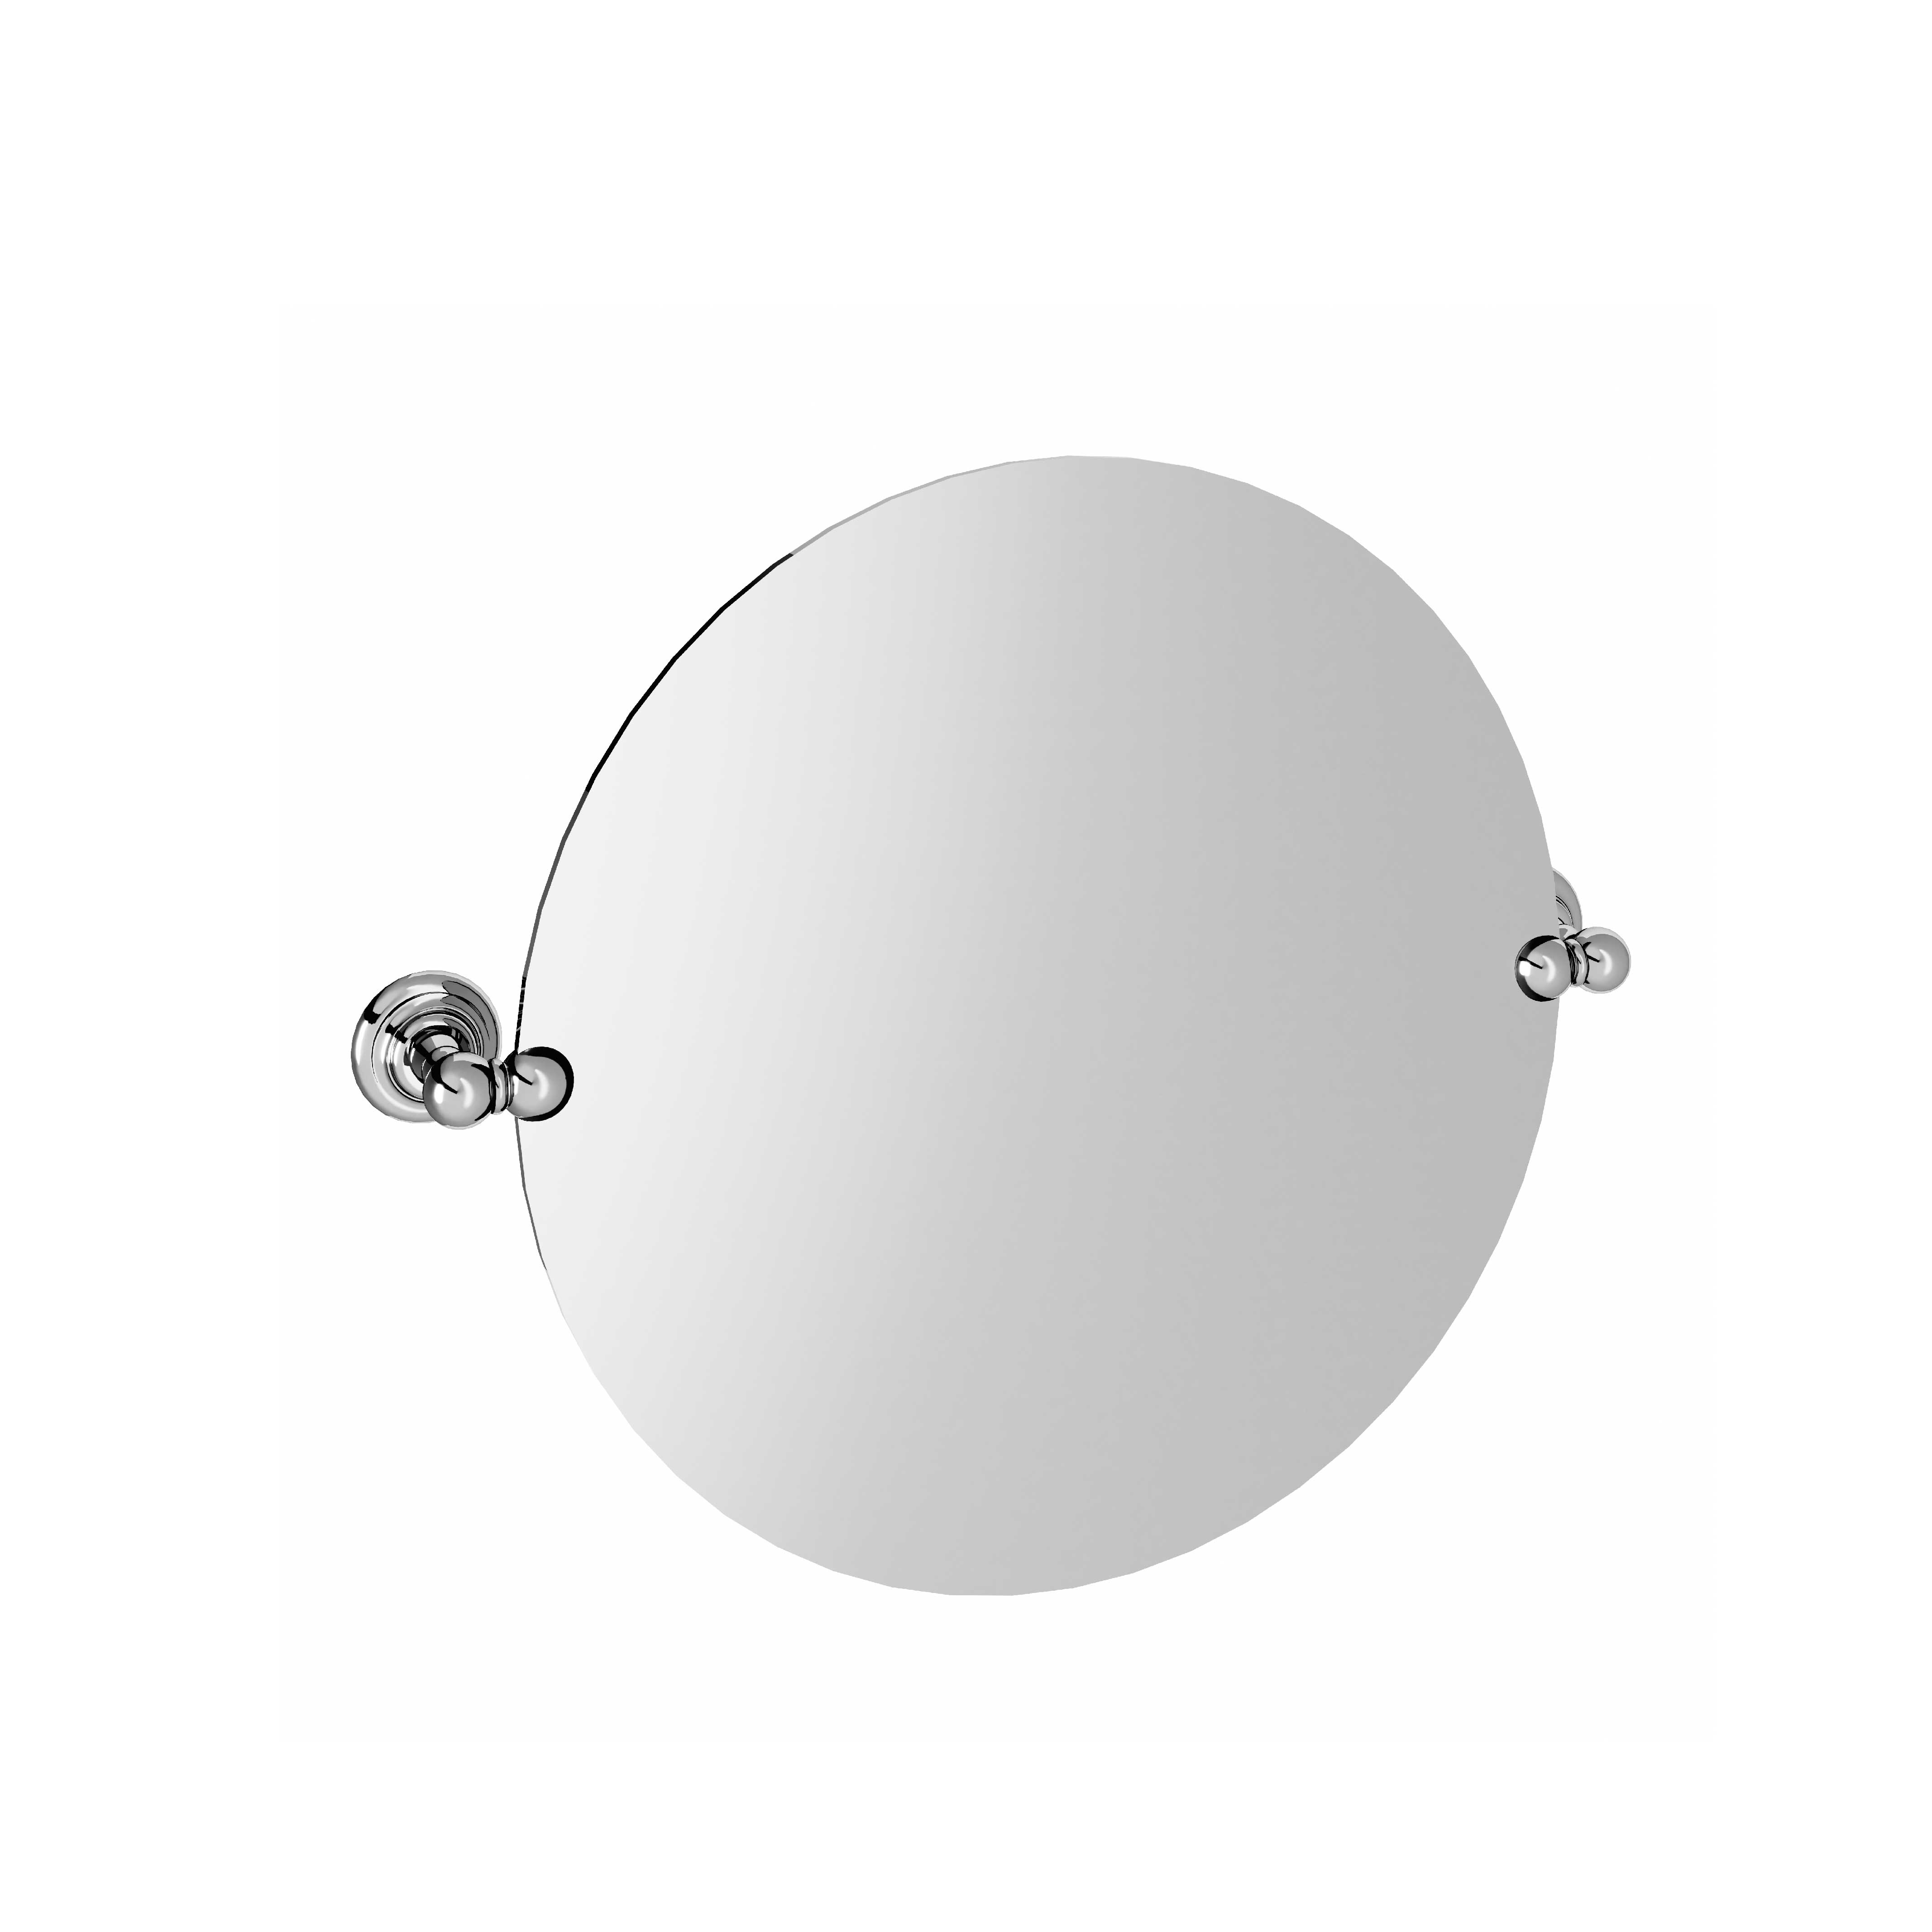 M04-536 Round mirror